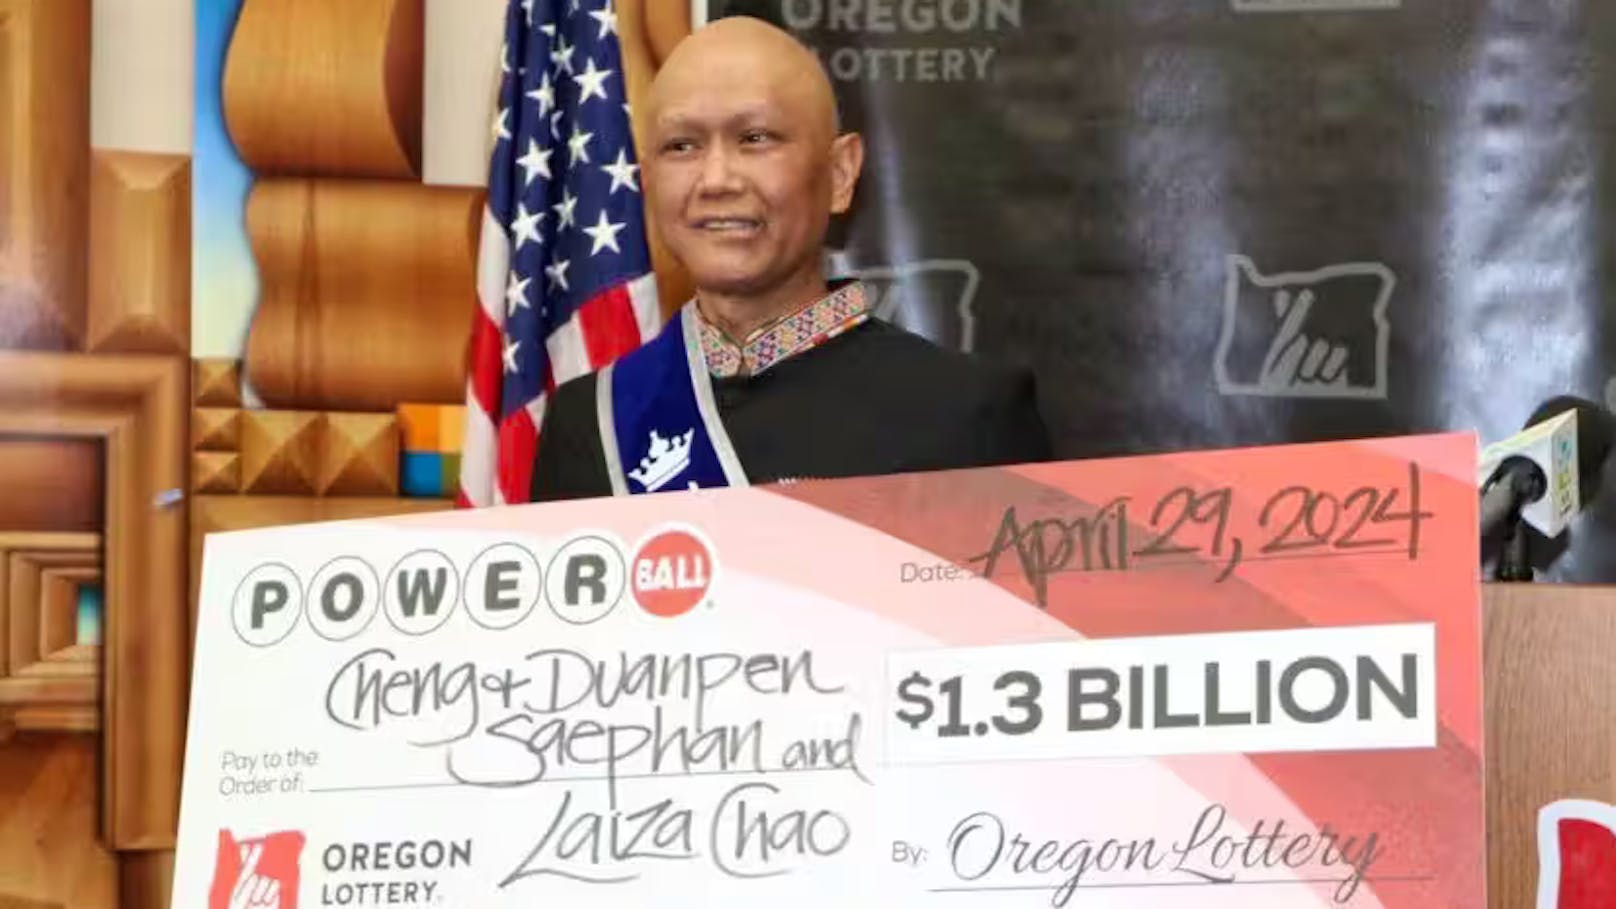 Krebspatient knackt Mega-Jackpot – so setzt er Geld ein